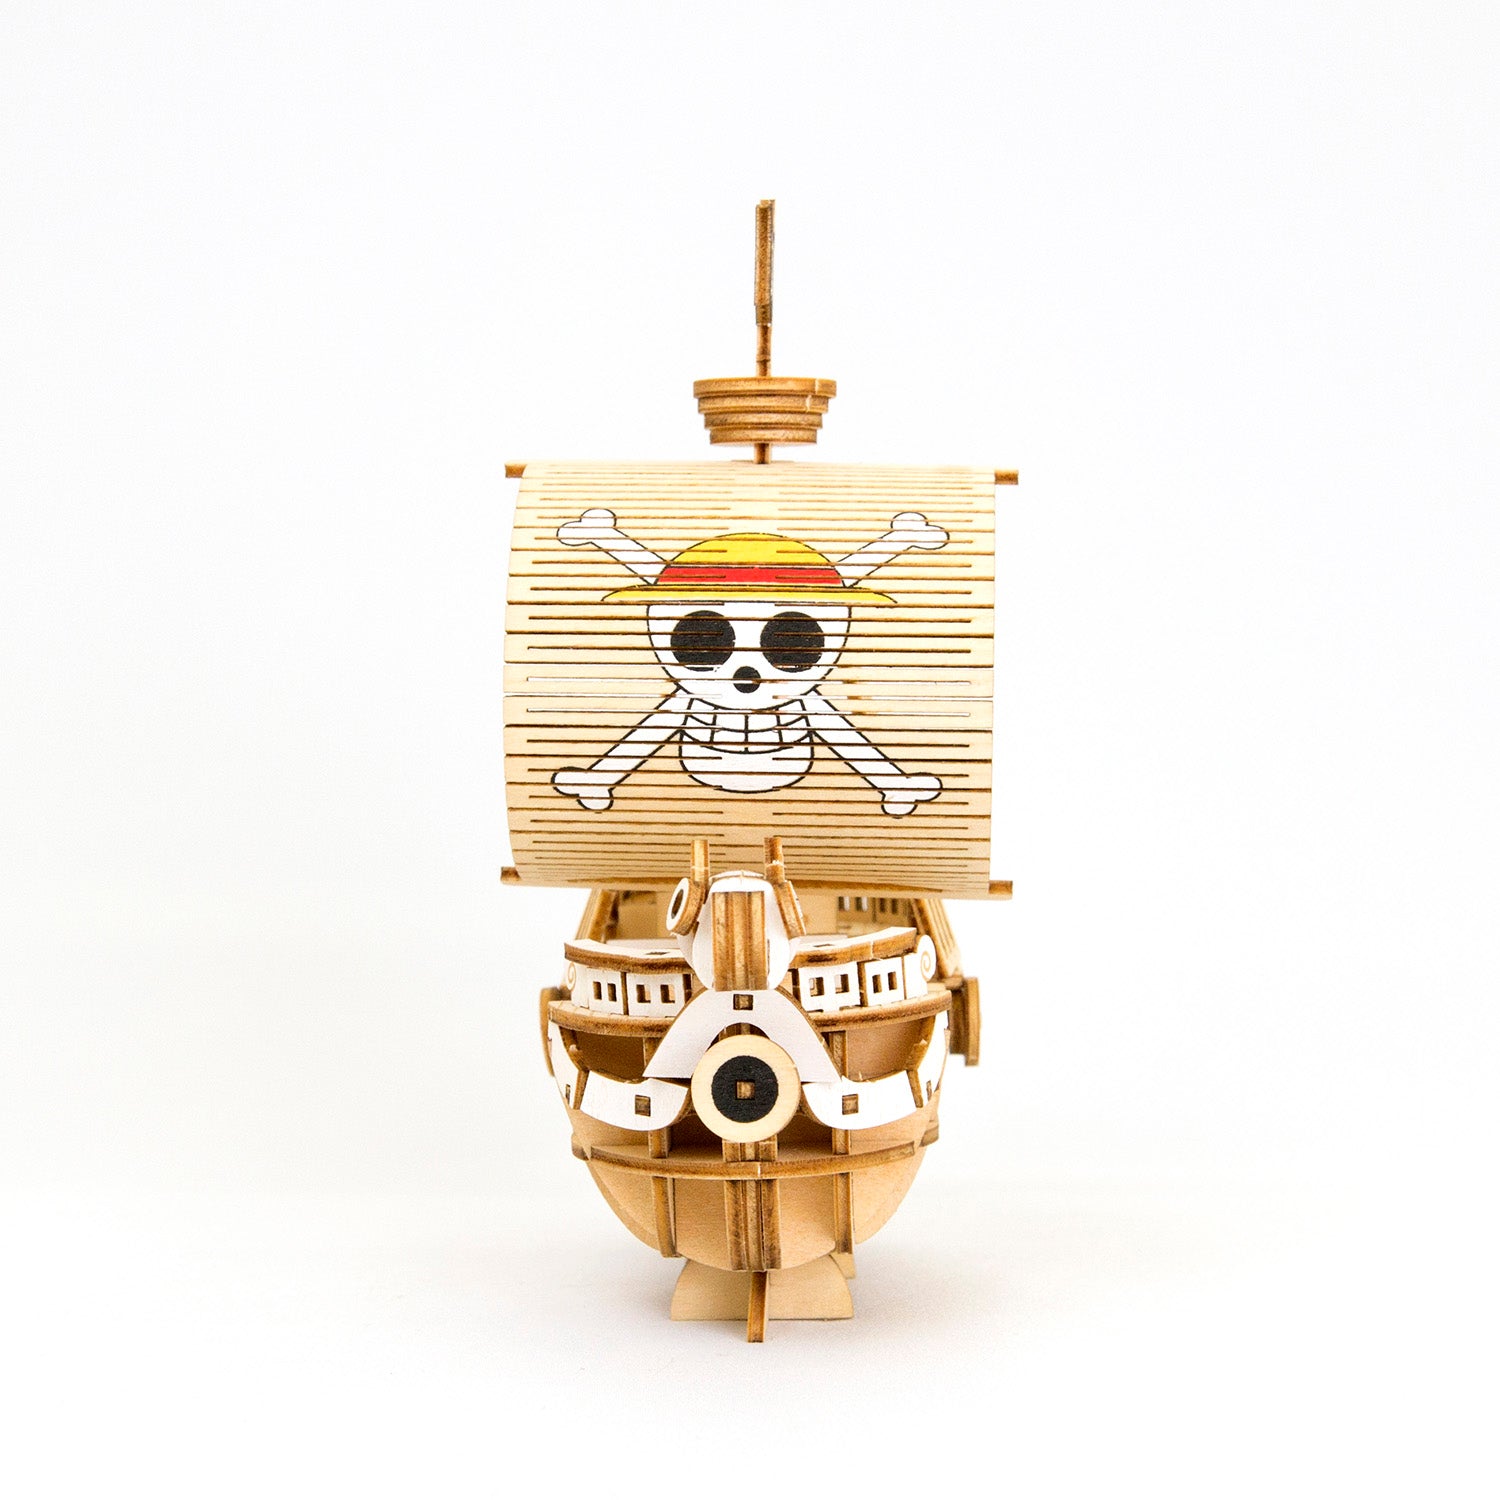 Ki-gu-mi One Piece Wooden Ship Model